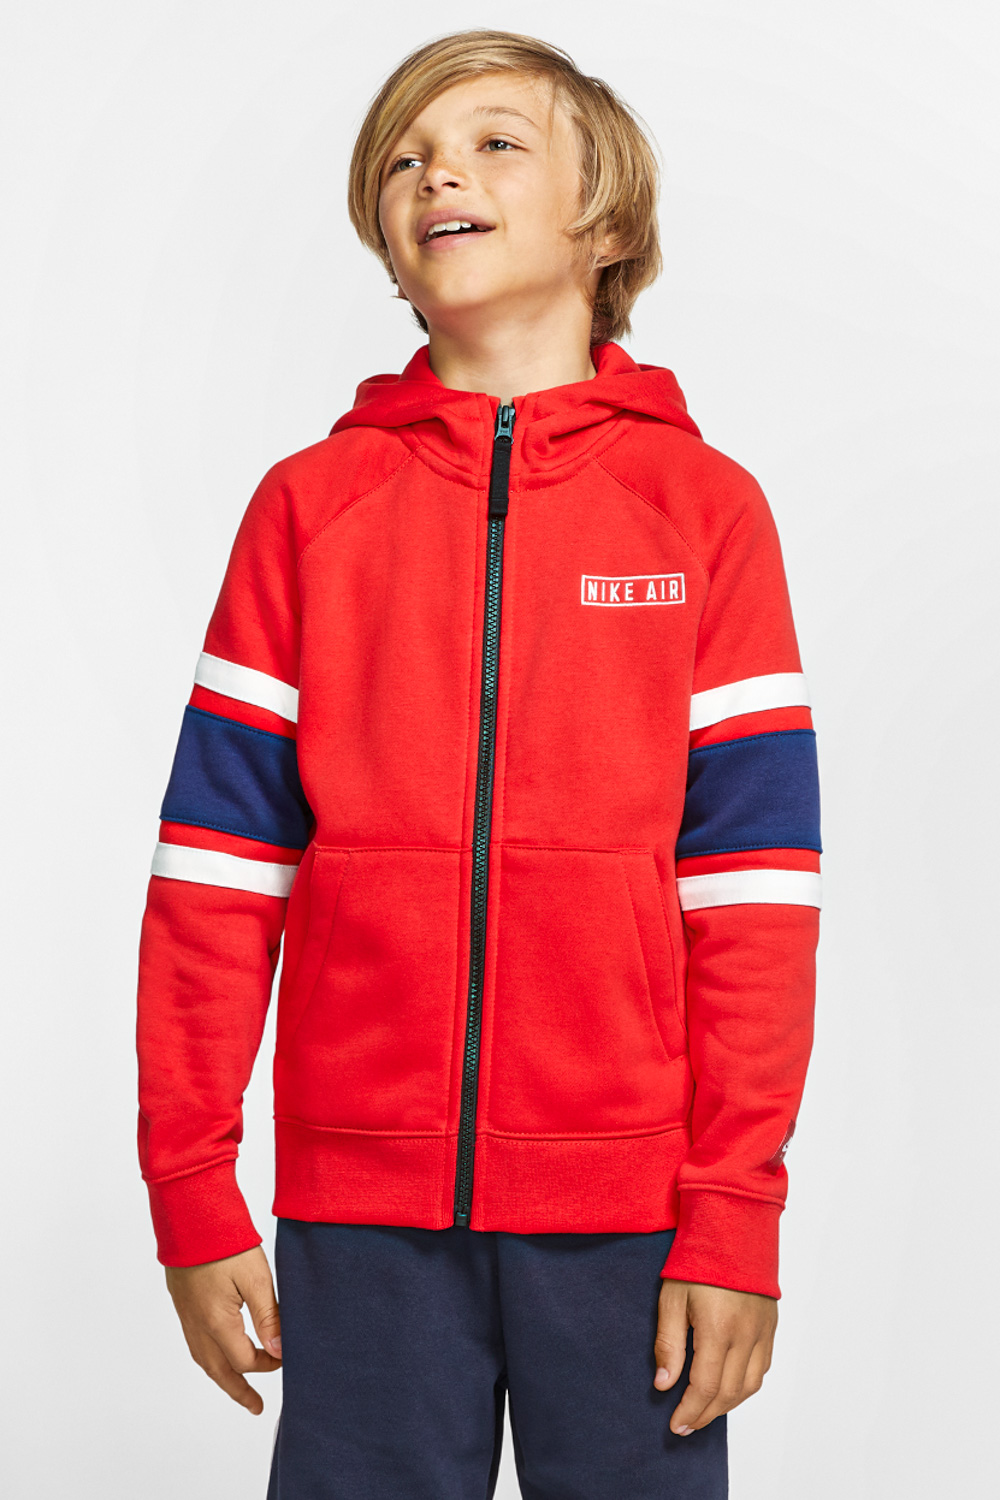 Παιδικά/Boys/Ρούχα/Αθλητικά NIKE - Παιδική αθλητική ζακέτα NIKE AIR κόκκινη